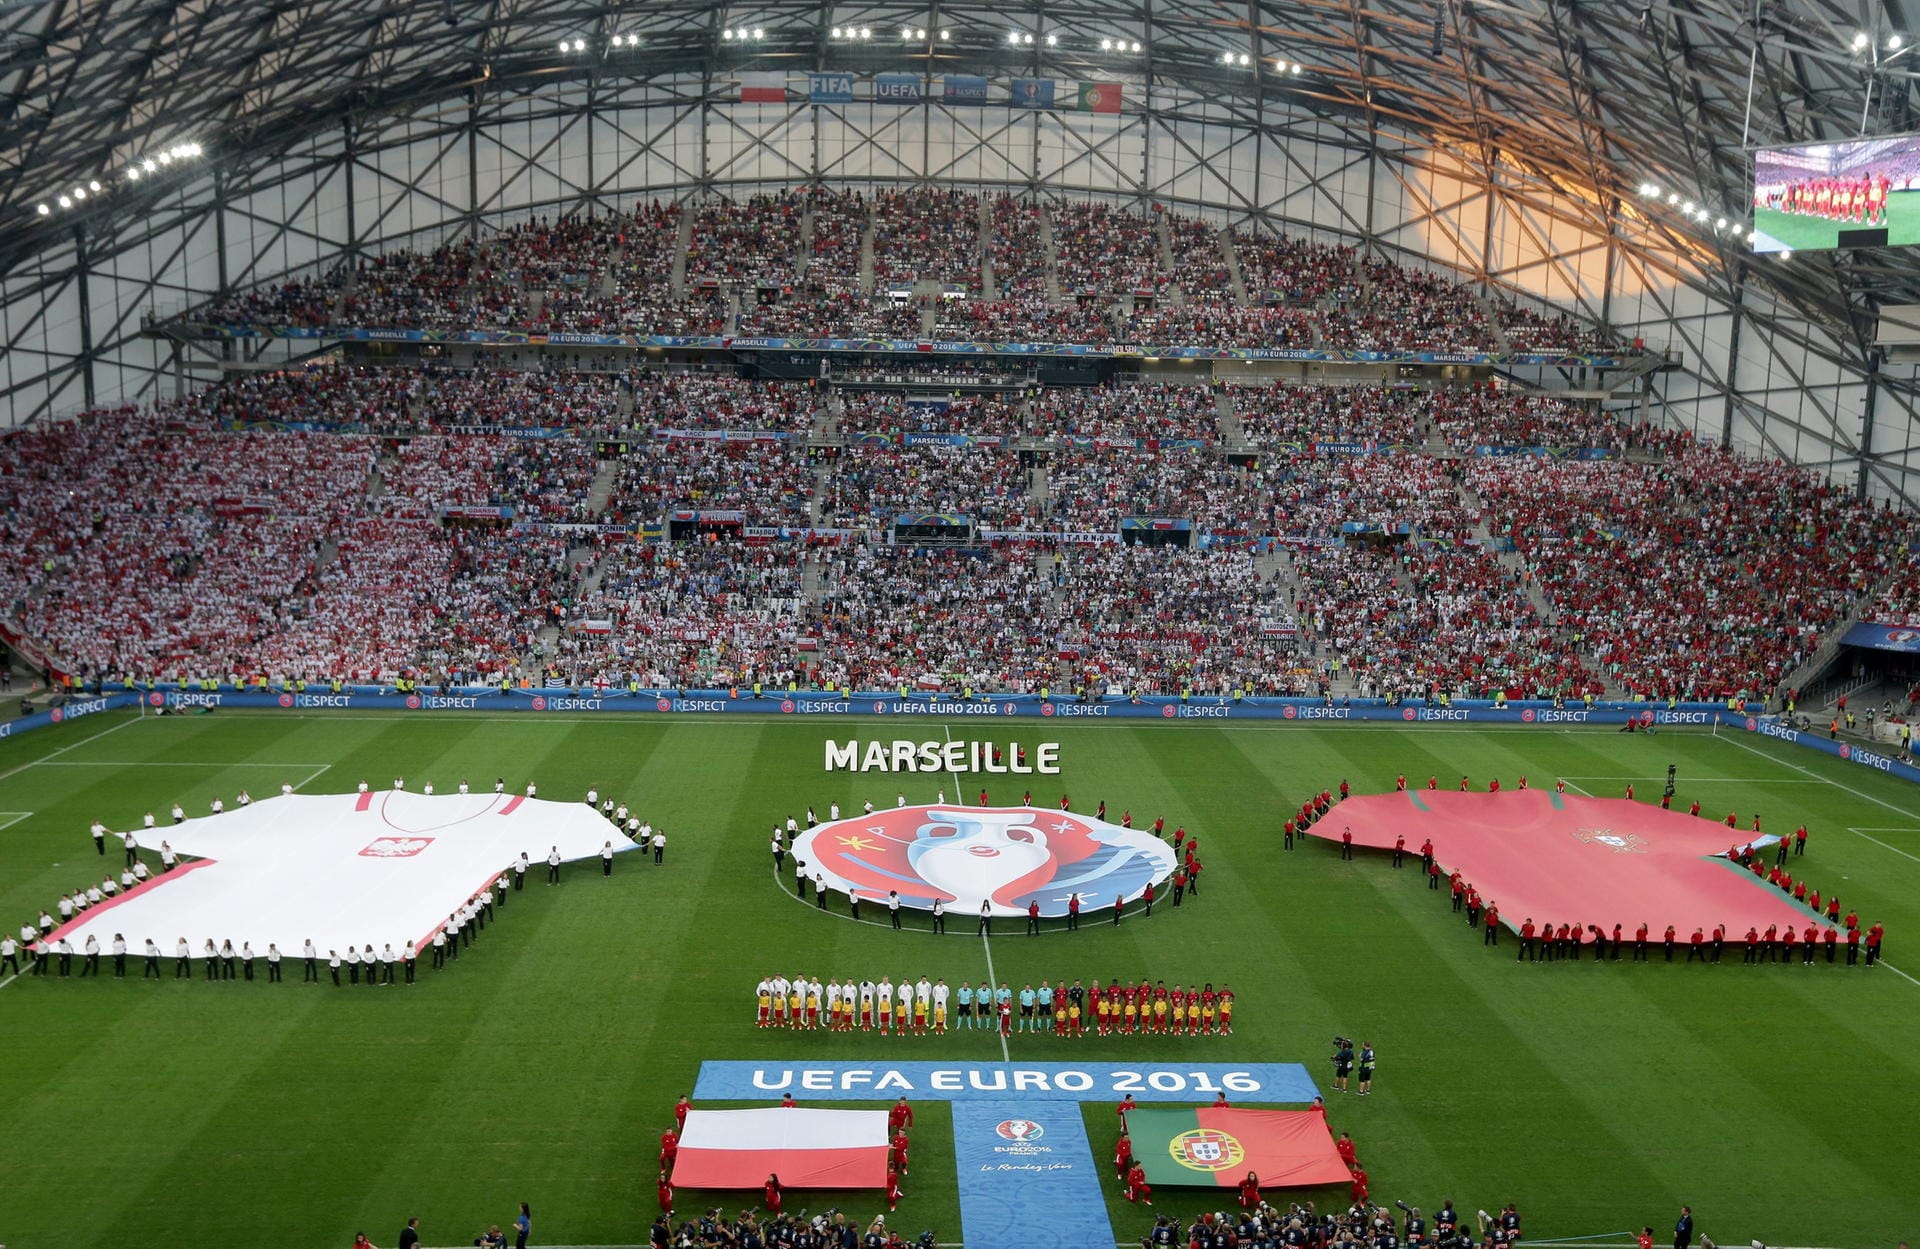 Mit dem Duell Polen gegen Portugal wird im Stade Vélodrome von Marseille das Viertelfinale der Europameisterschaft in Frankreich eröffnet.